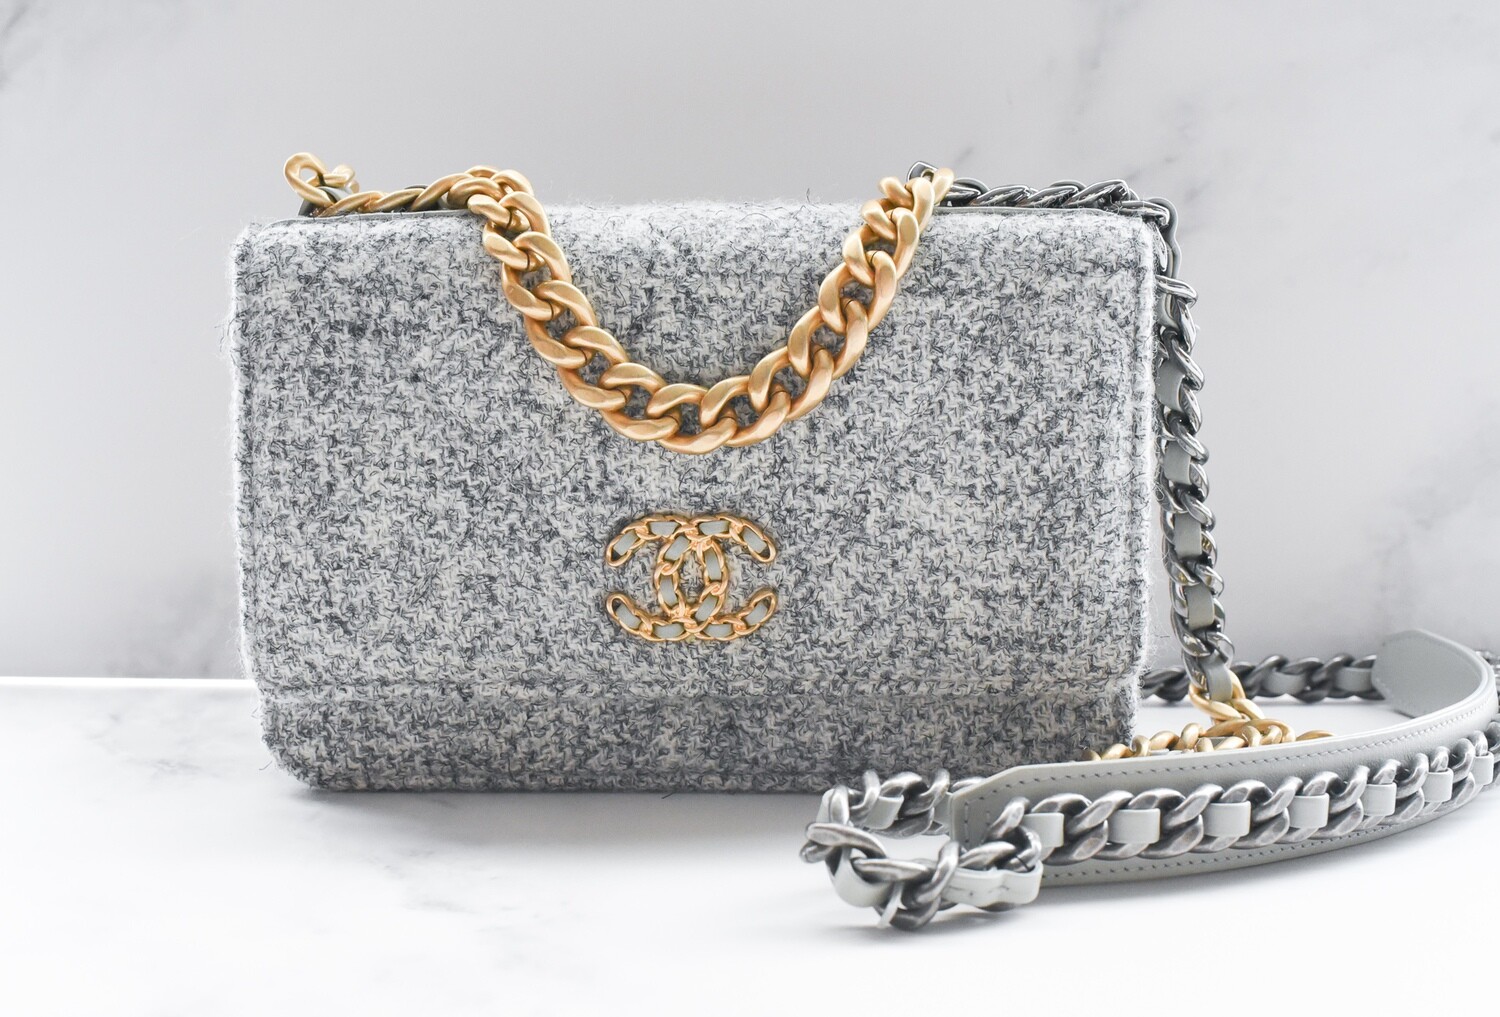 Wallet on chain chanel 19 tweed handbag Chanel Grey in Tweed